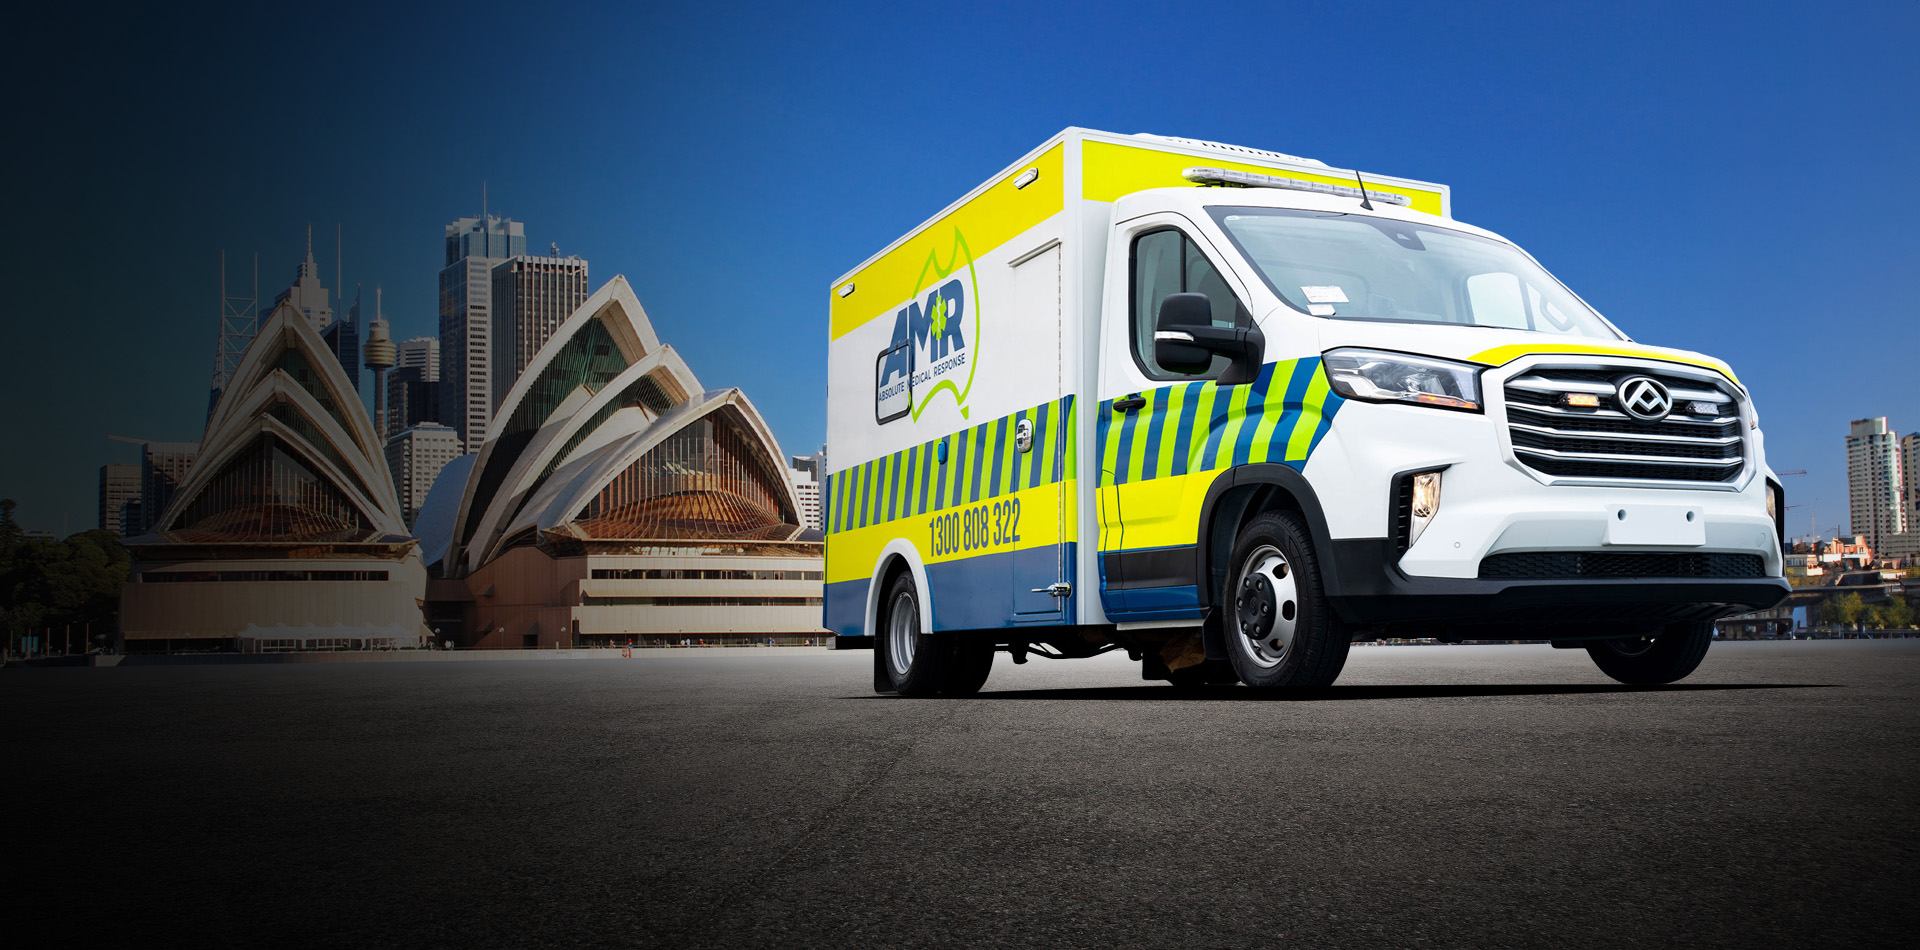 Australia Ambulances